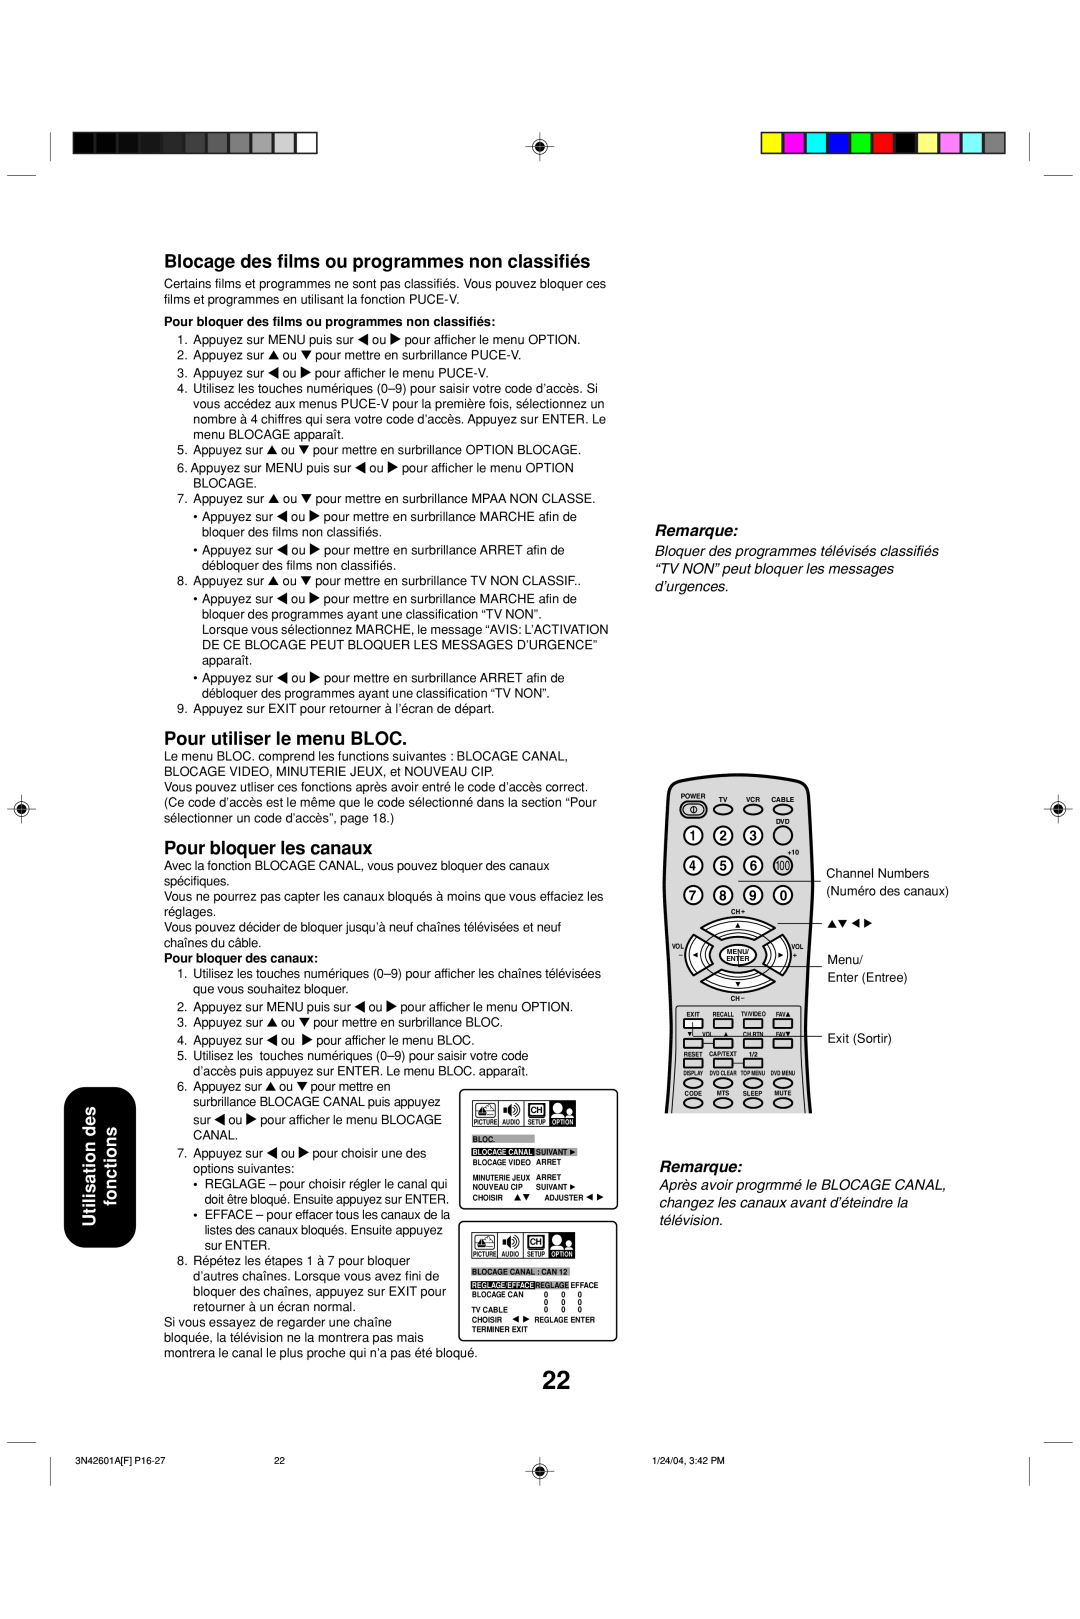 Toshiba 27A44 Utilisation des fonctions, Blocage des films ou programmes non classifiés, Pour utiliser le menu BLOC 